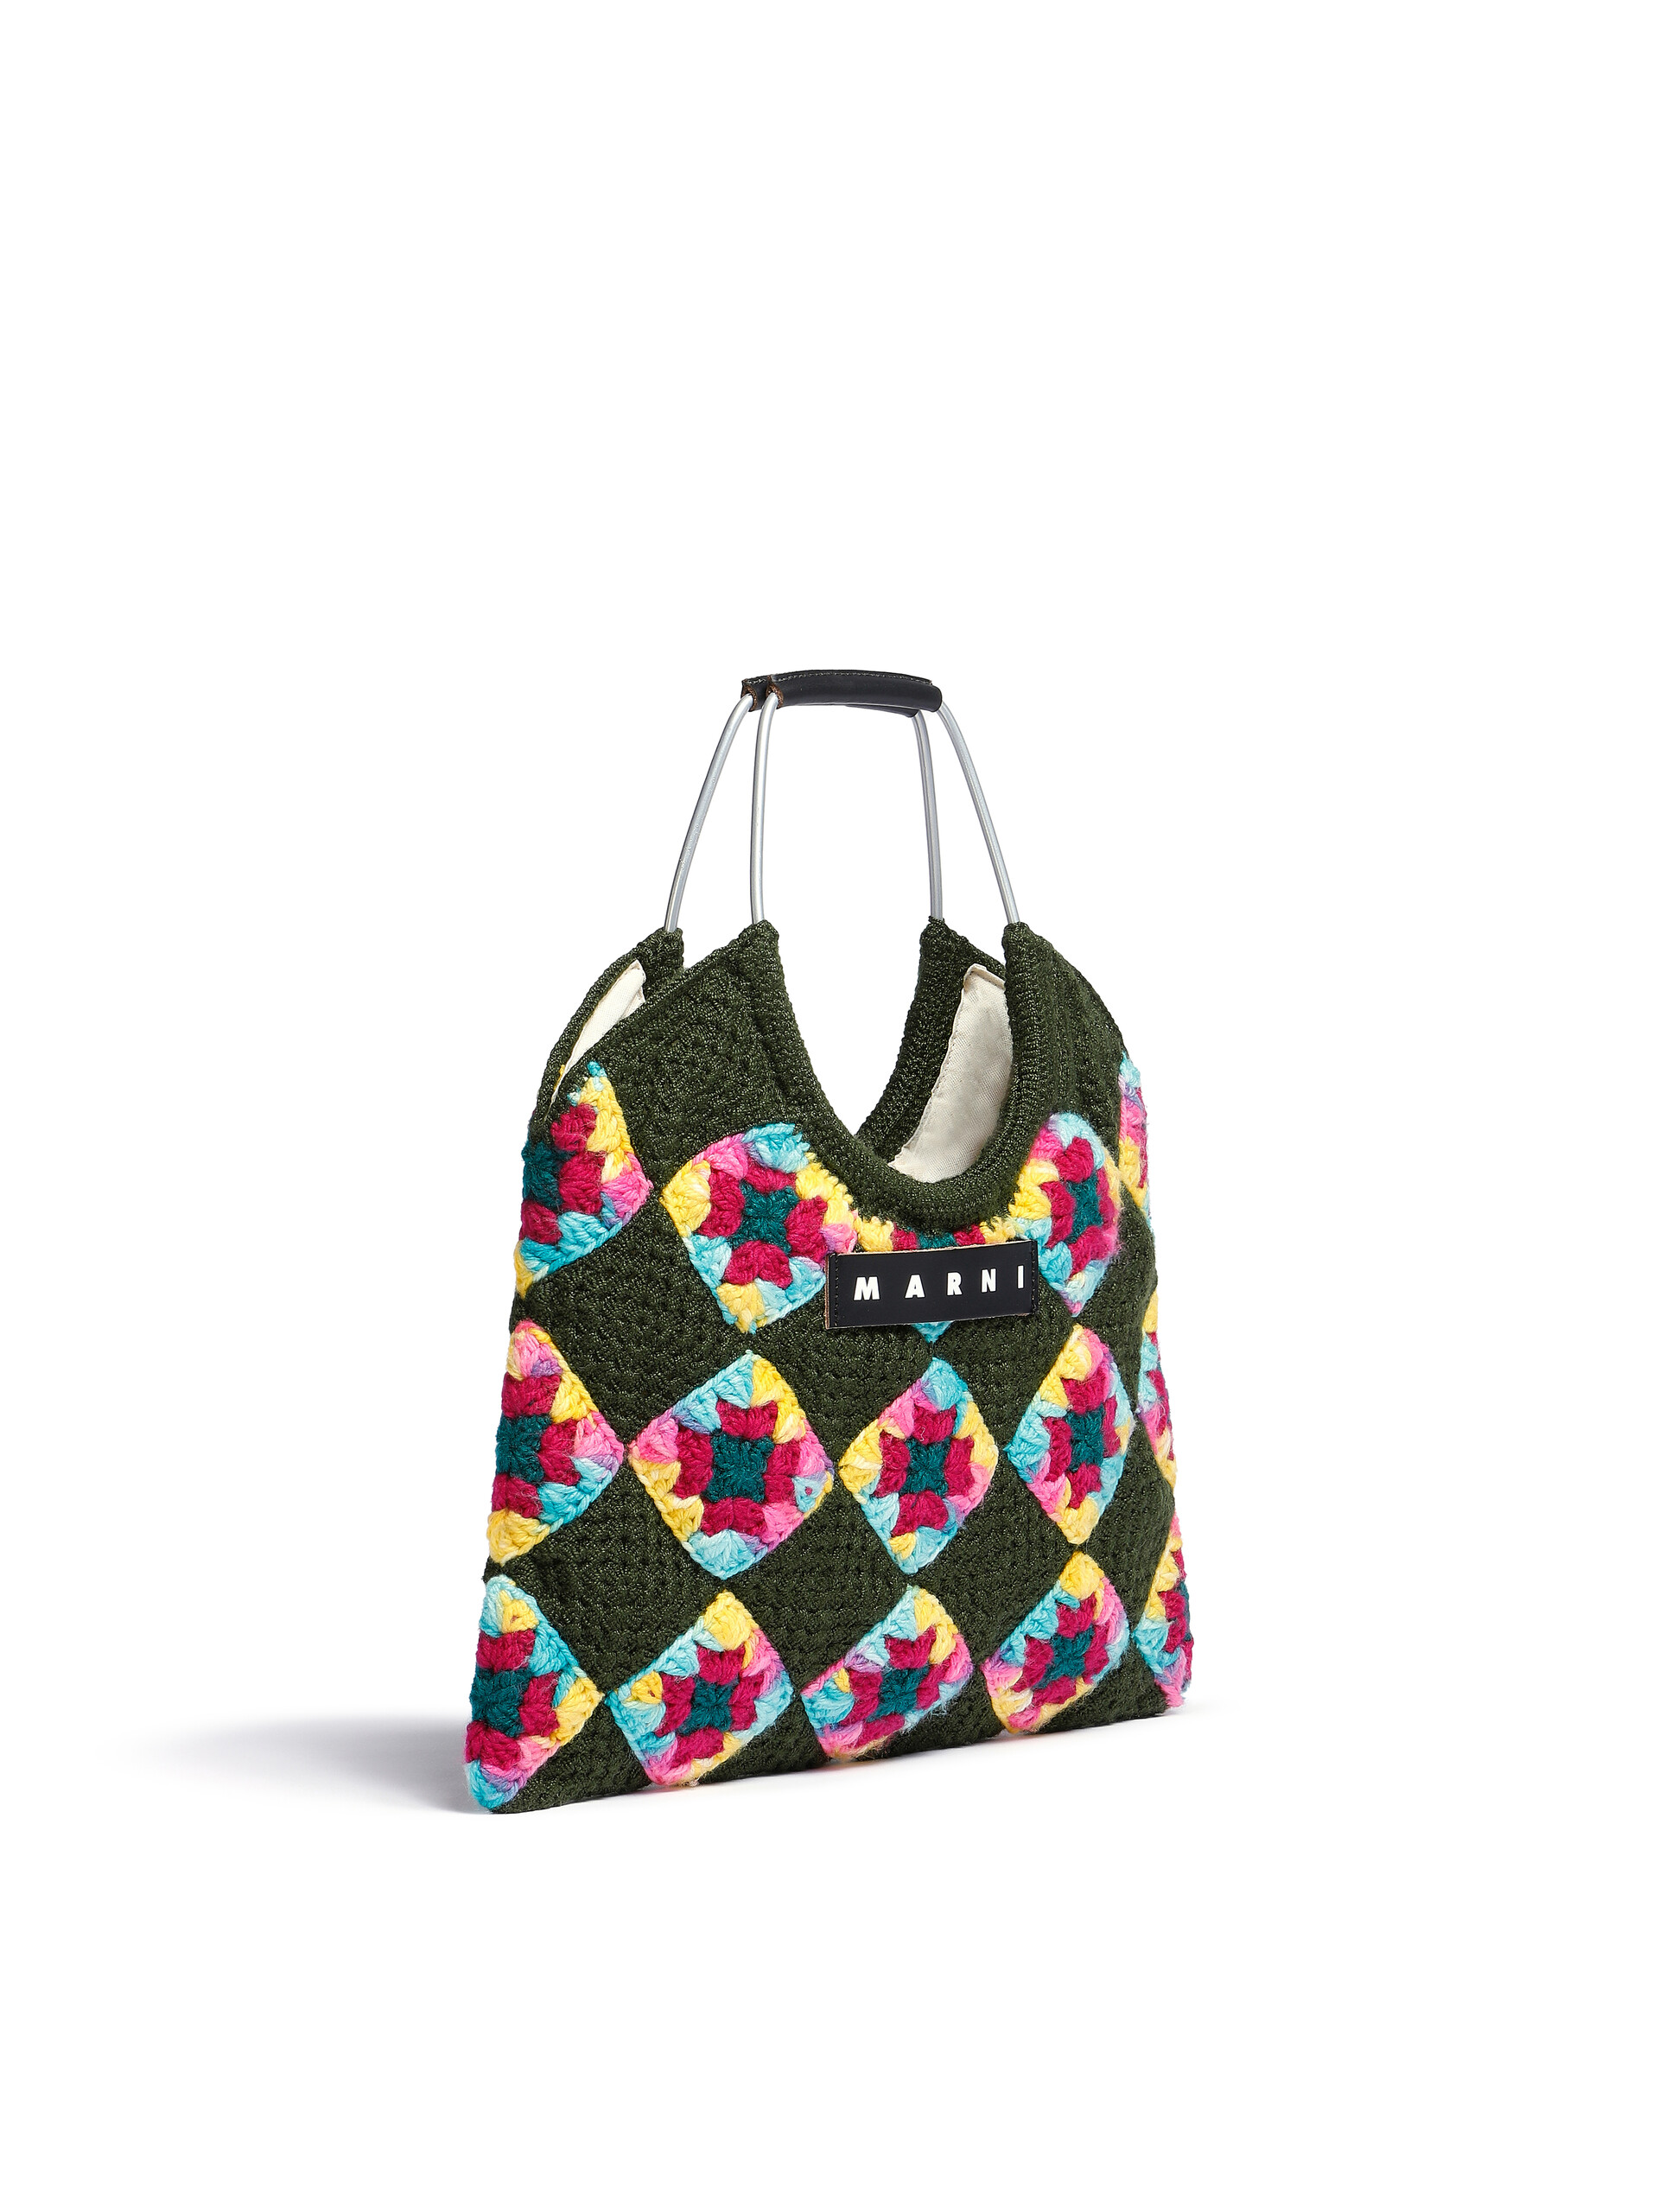 Green Marni Market multicoloured crochet bag - Bags - Image 2